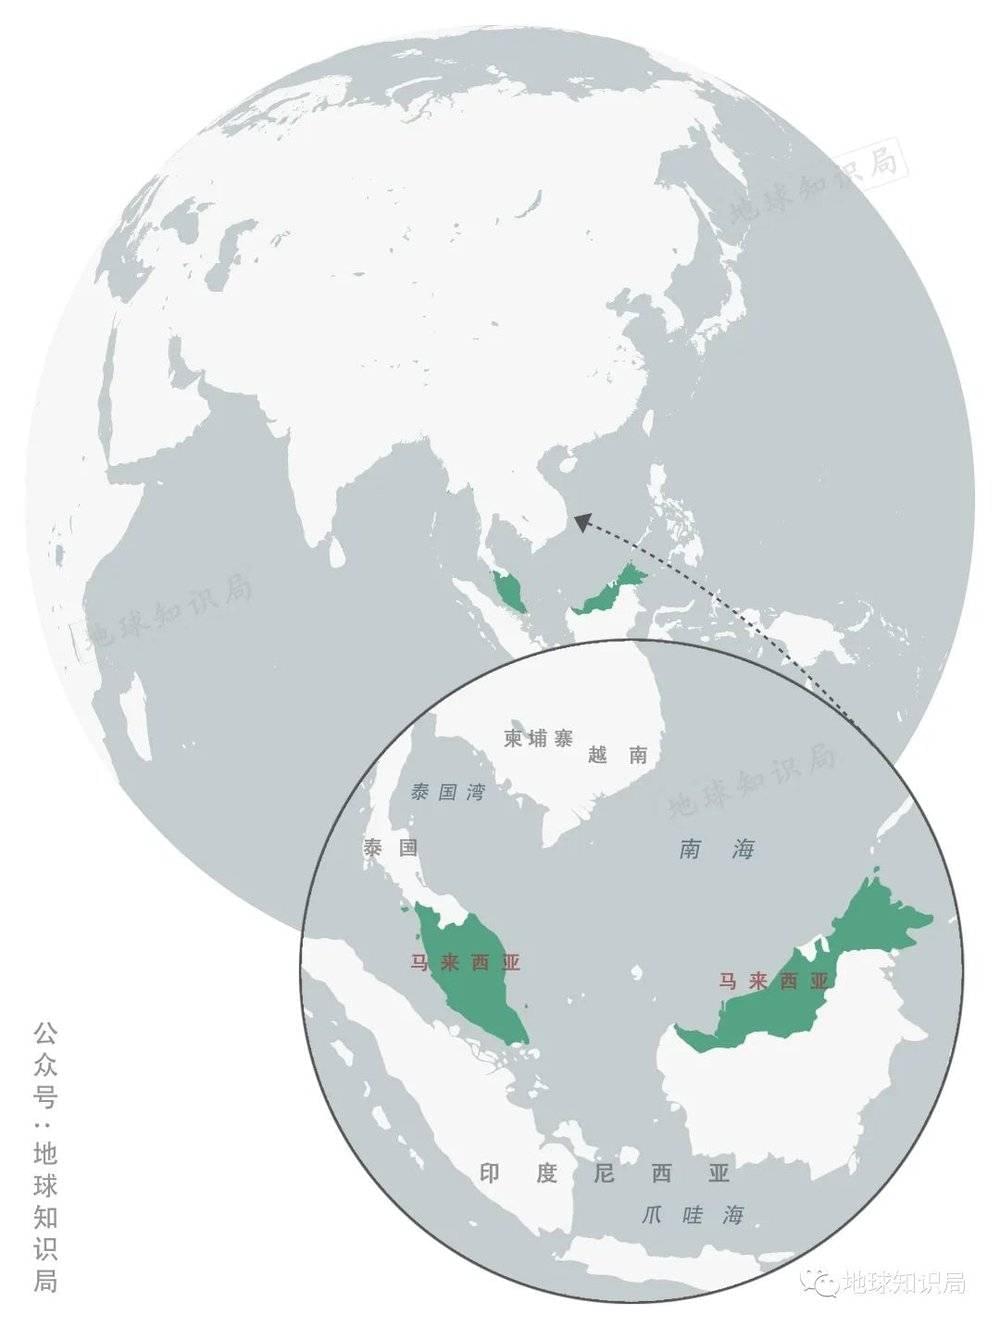 马来西亚，下南洋时期吸引了许多华人 